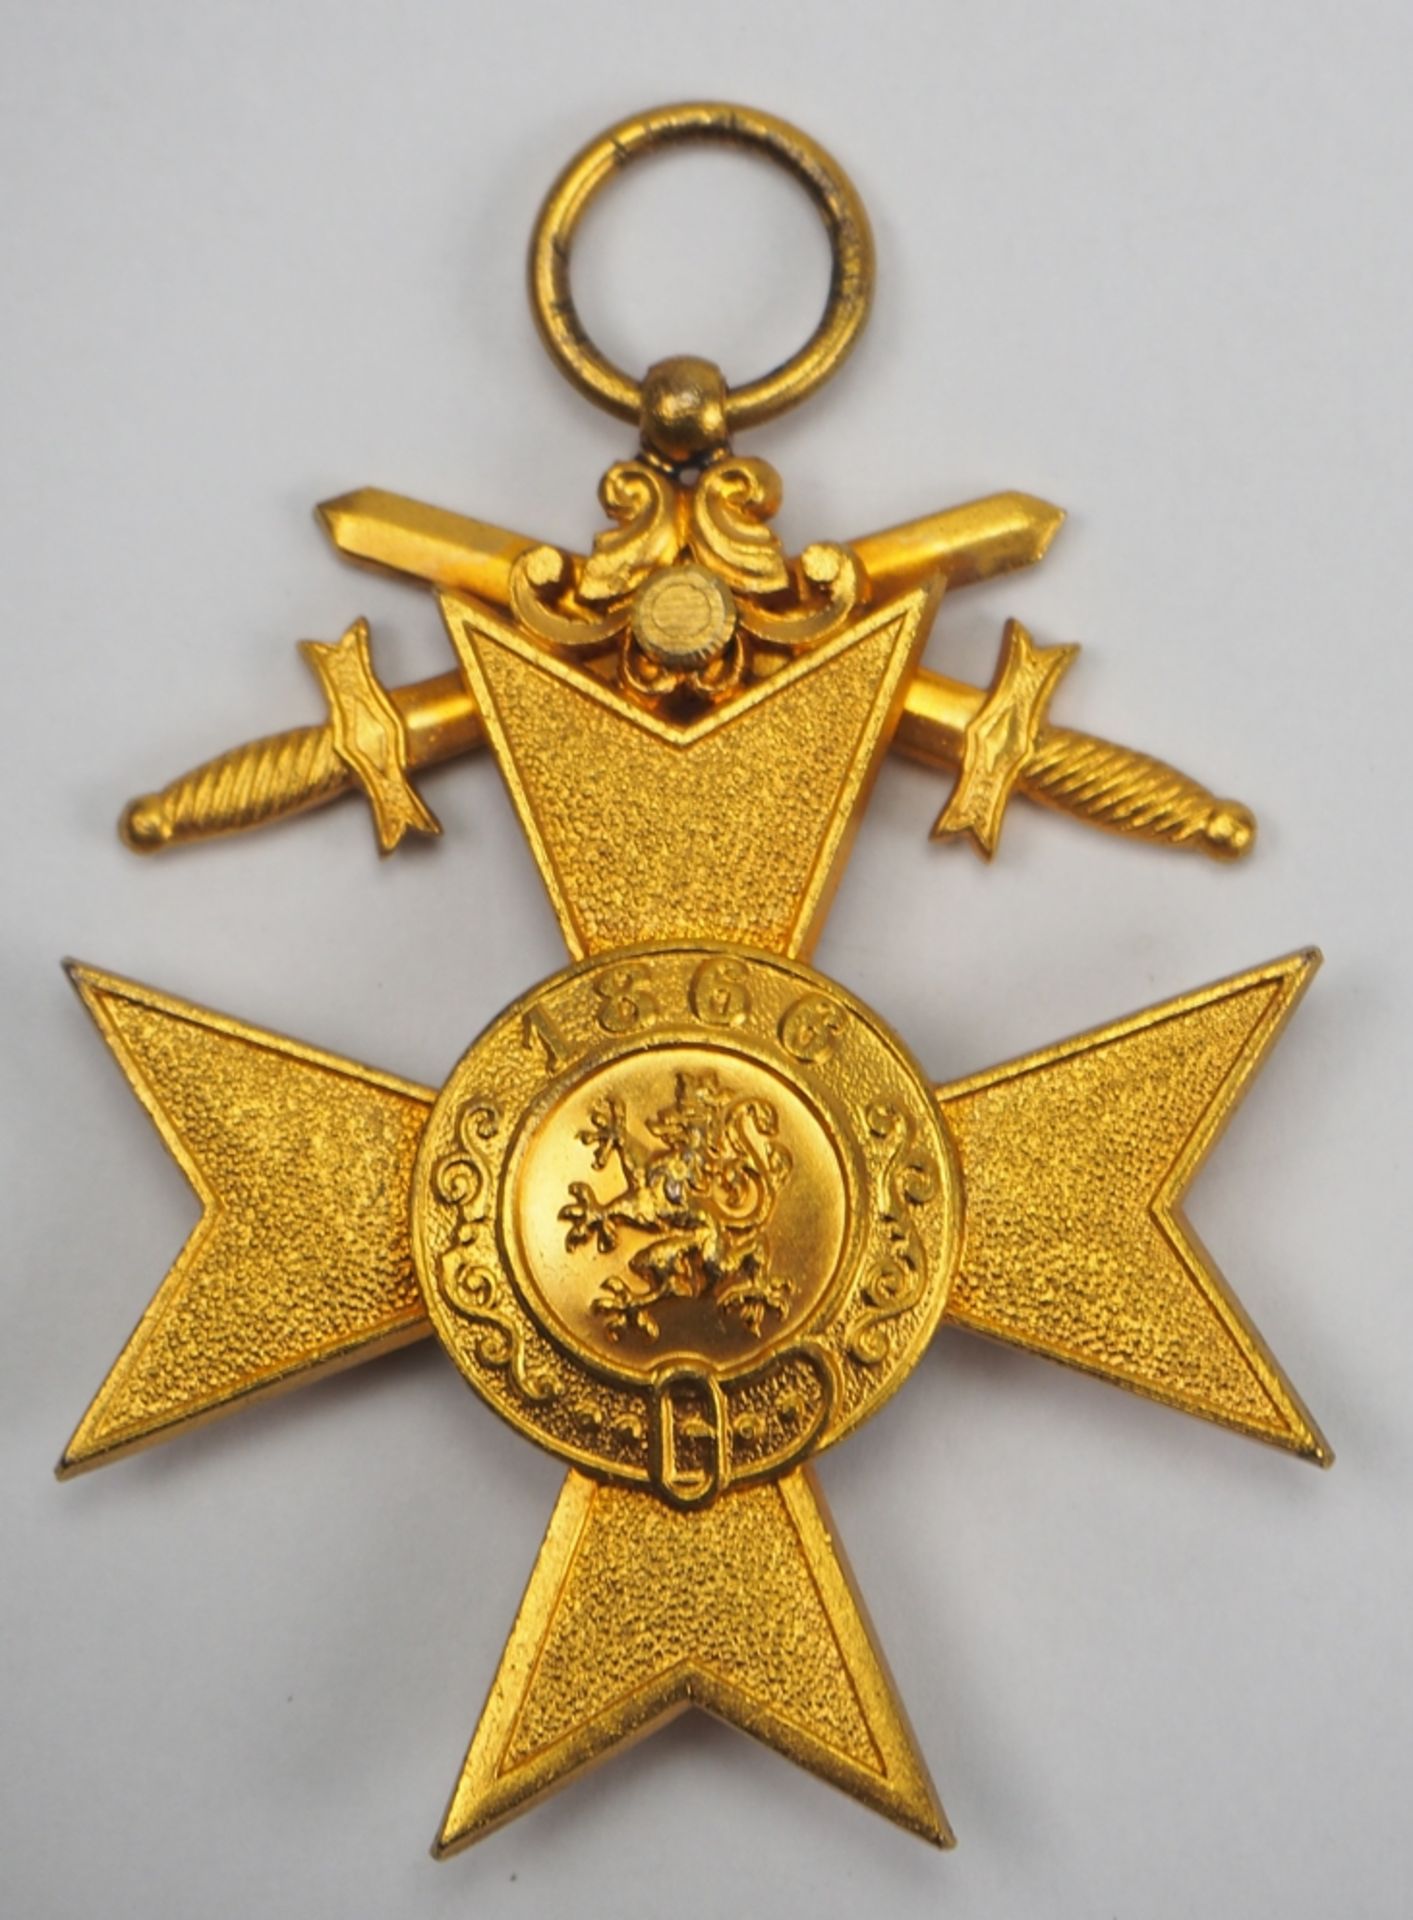 Bayern: Militär-Verdienstkreuz, 1. Klasse mit Schwertern. - Image 2 of 2